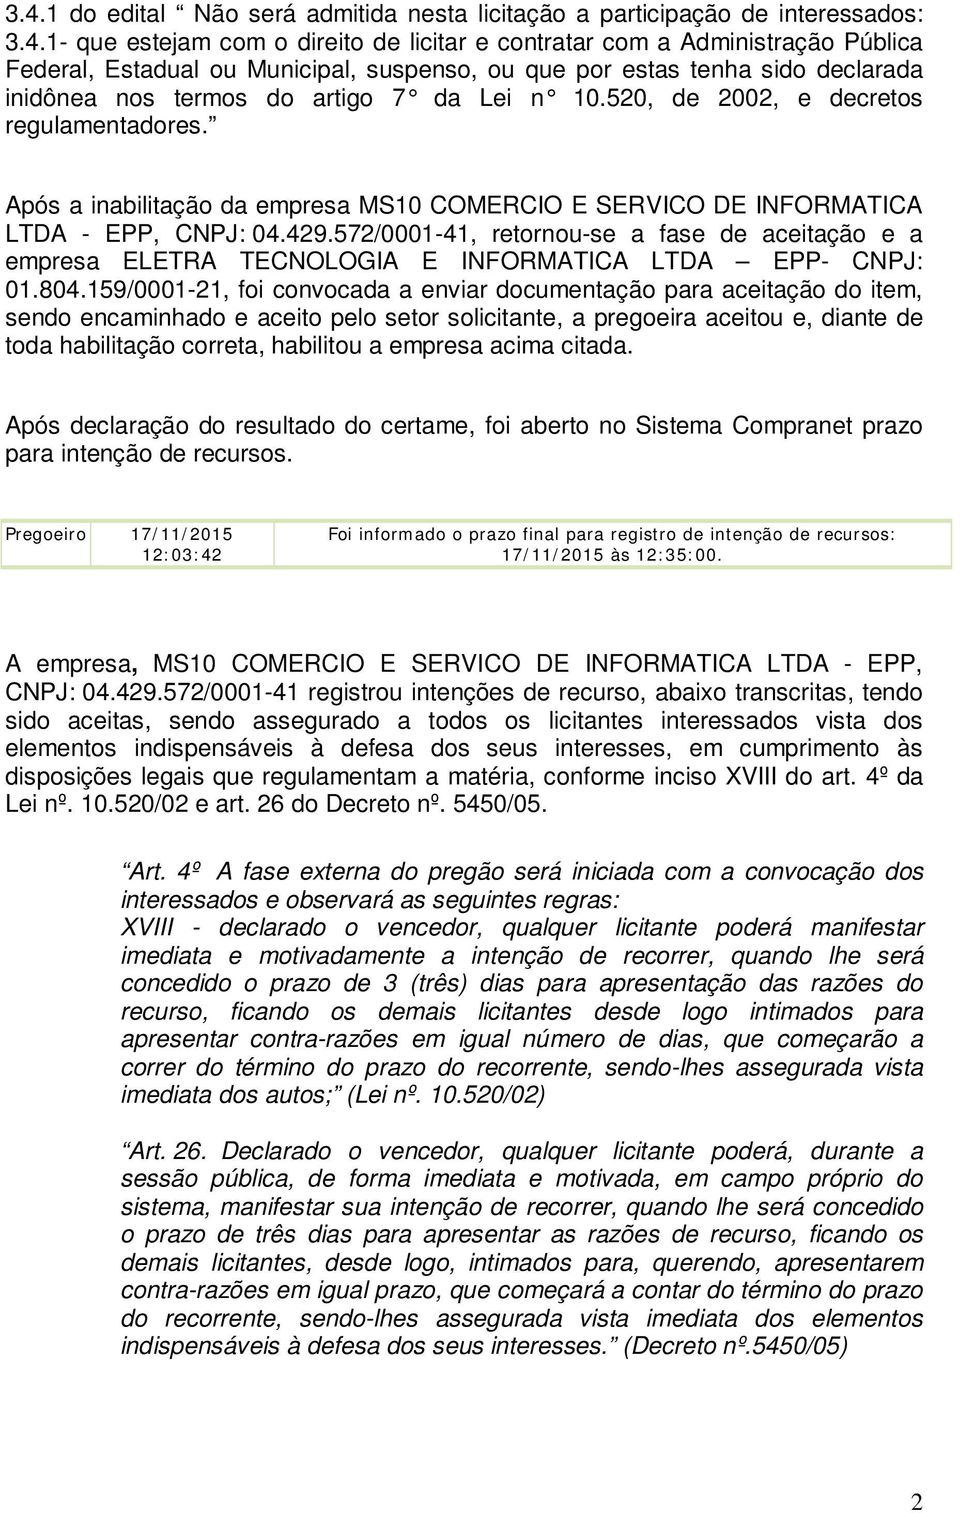 Após a inabilitação da empresa MS10 COMERCIO E SERVICO DE INFORMATICA LTDA - EPP, CNPJ: 04.429.